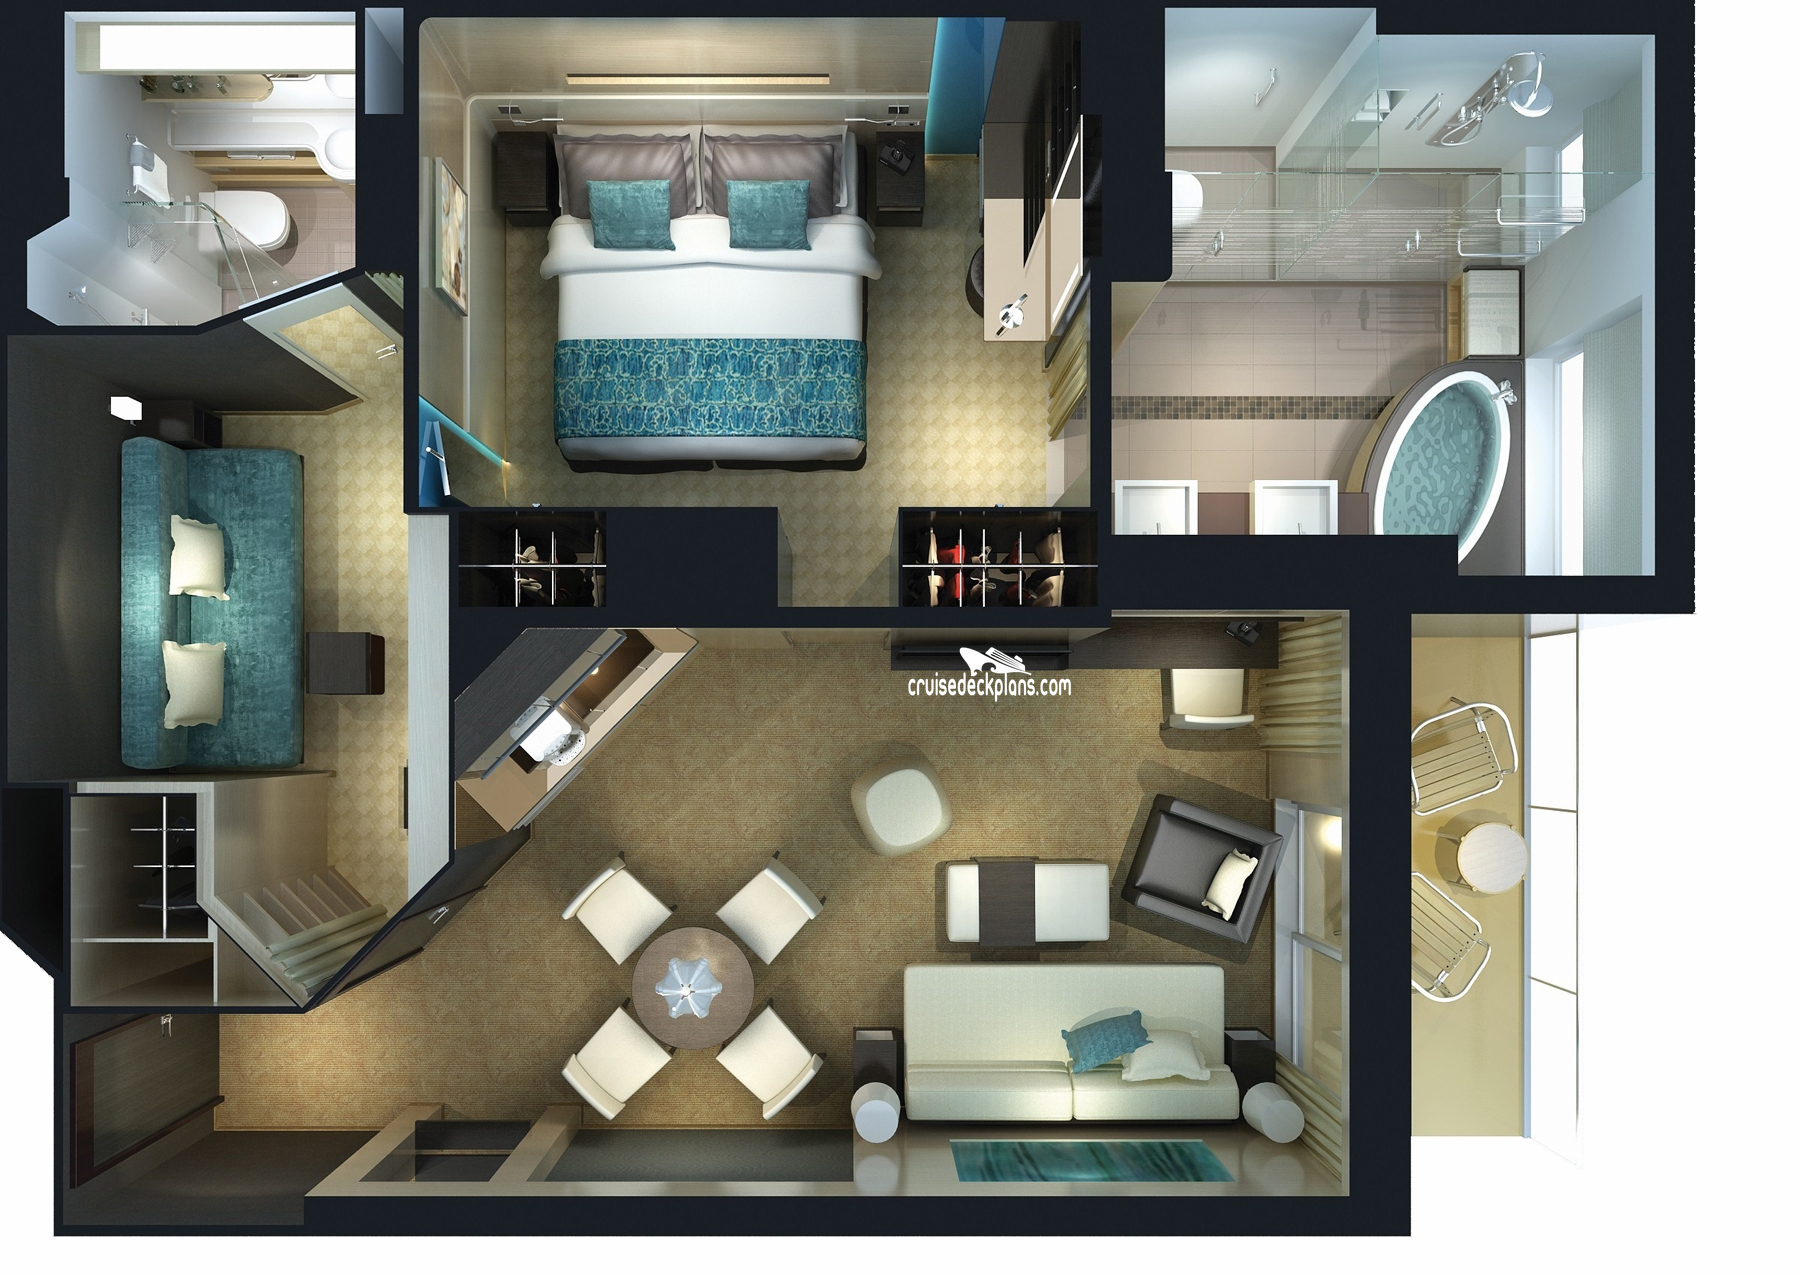 Norwegian Getaway 2-Bedroom Family Villa cabin floor plan